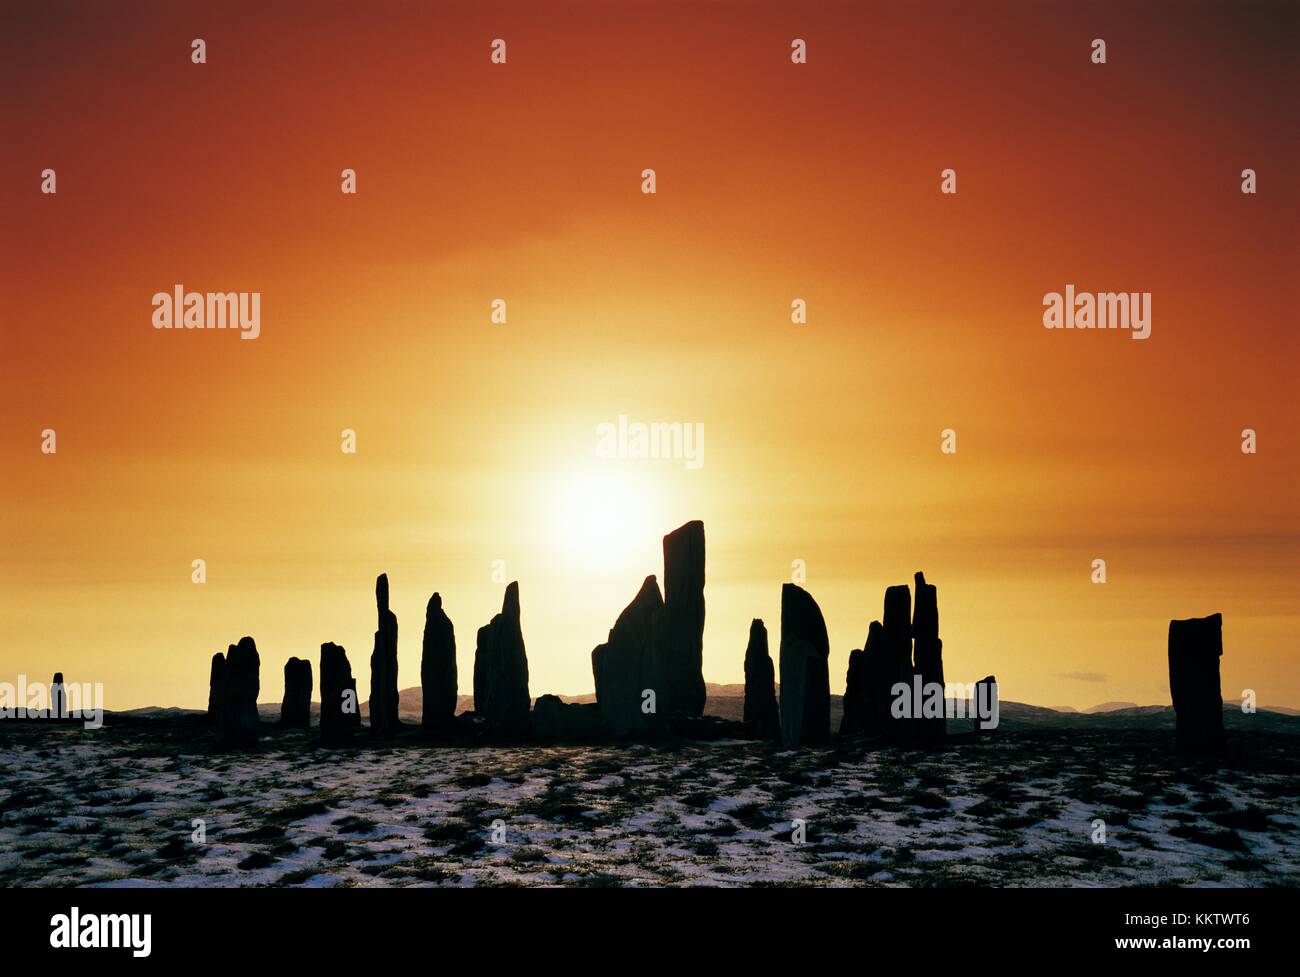 Callanish prähistorische Steinkreis, schottische Hebriden Insel Lewis, Schottland. Über 5000 Jahre alt. Winter Sonnenuntergang auf Schnee. Dezember Januar Februar Stockfoto